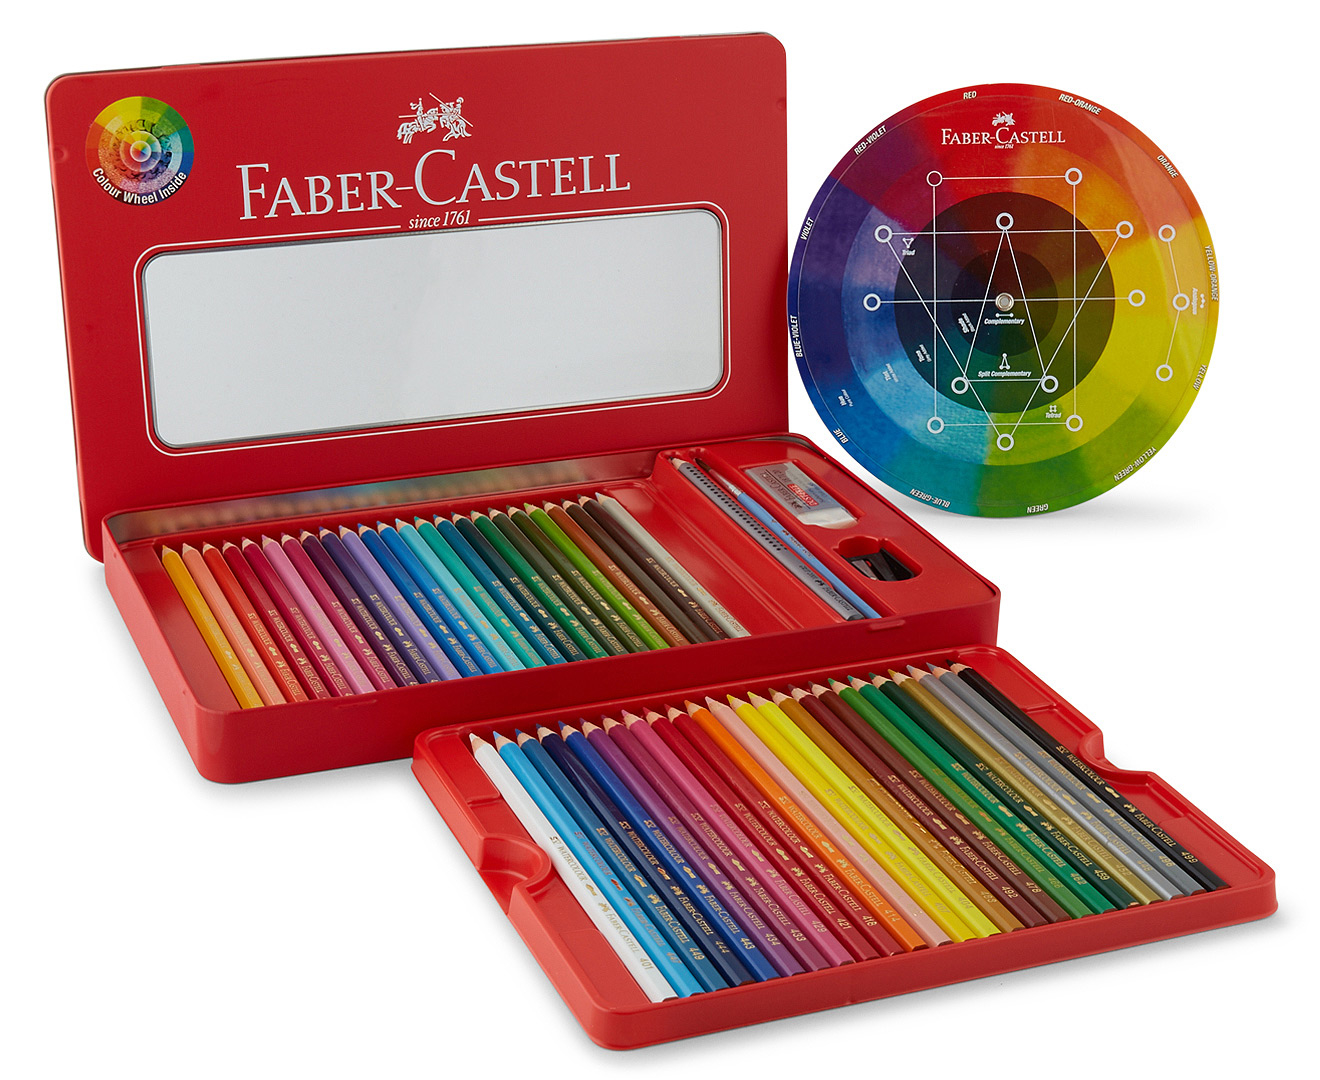 Faber-Castell 48 Watercolour Pencil Sketch Set